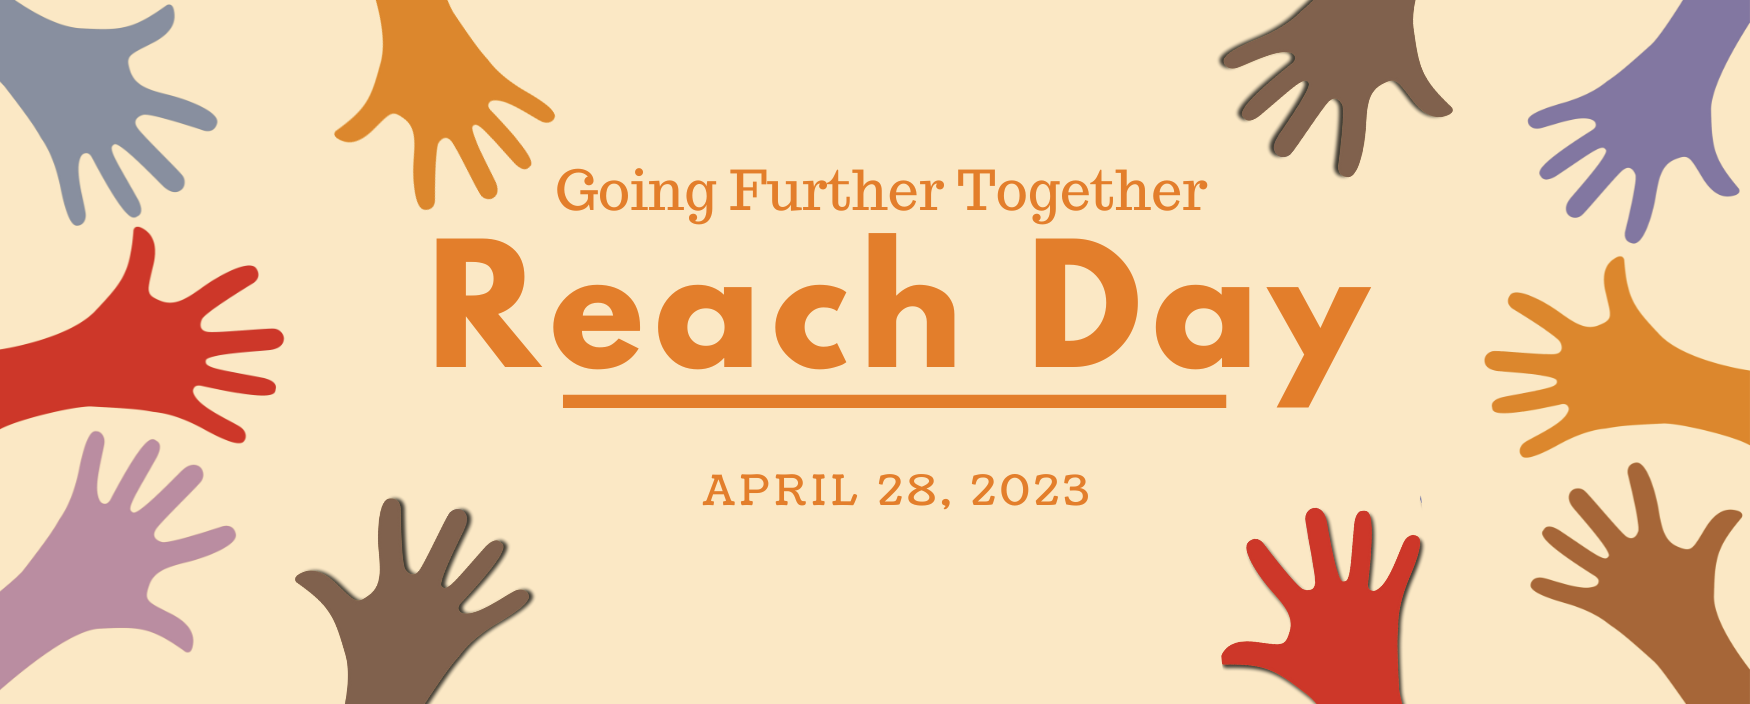 Reach Day 2022